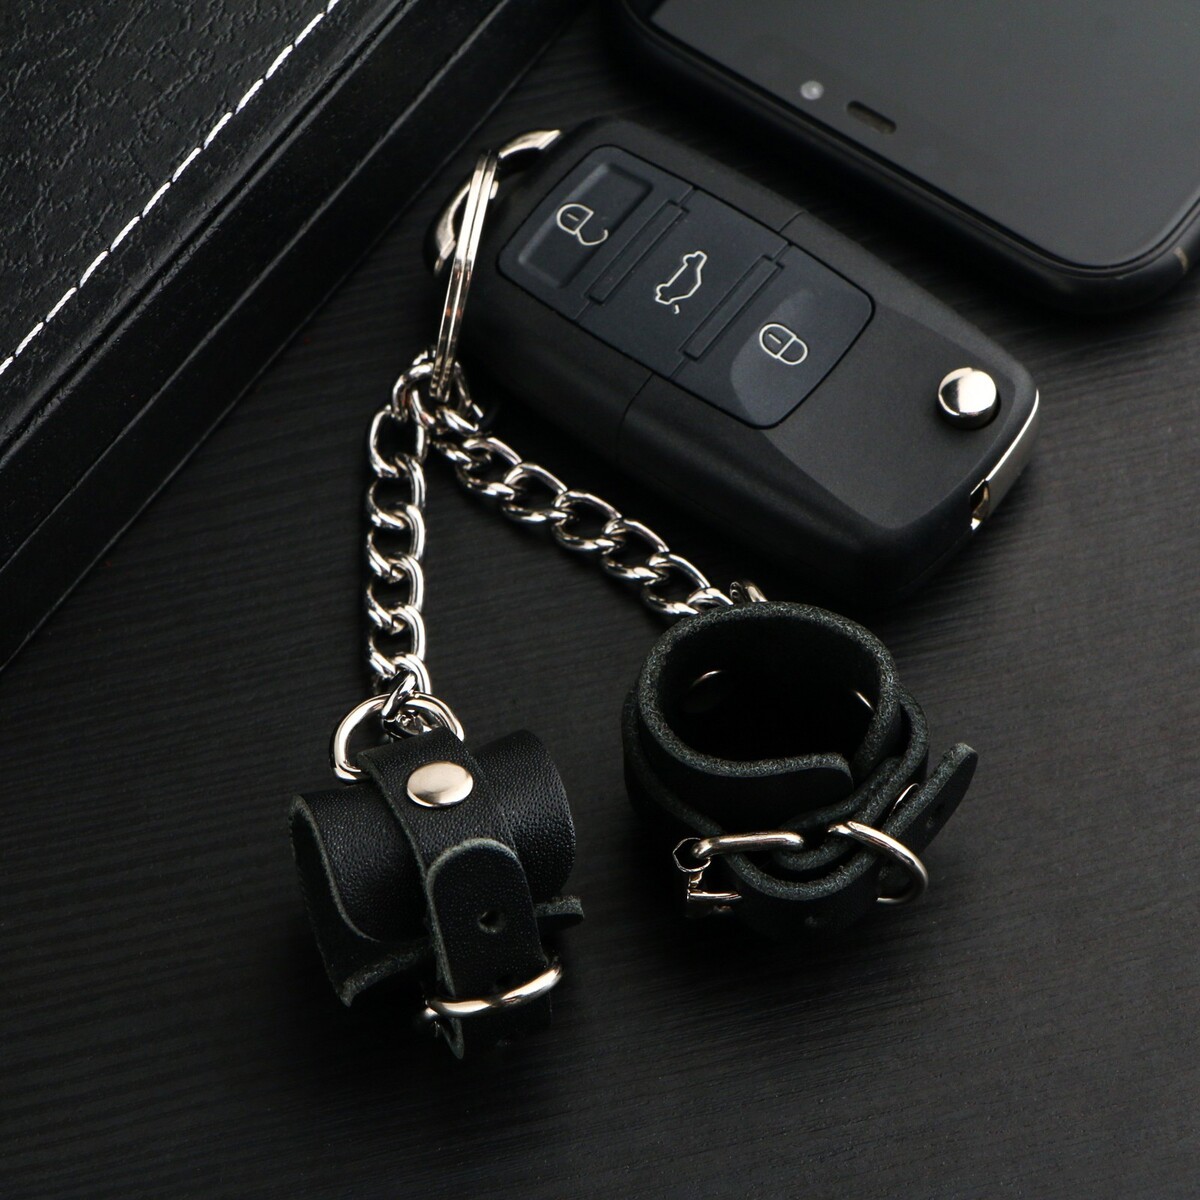 Брелок для автомобильного ключа, наручники, натуральная кожа No brand, цвет черный 03157556 - фото 3